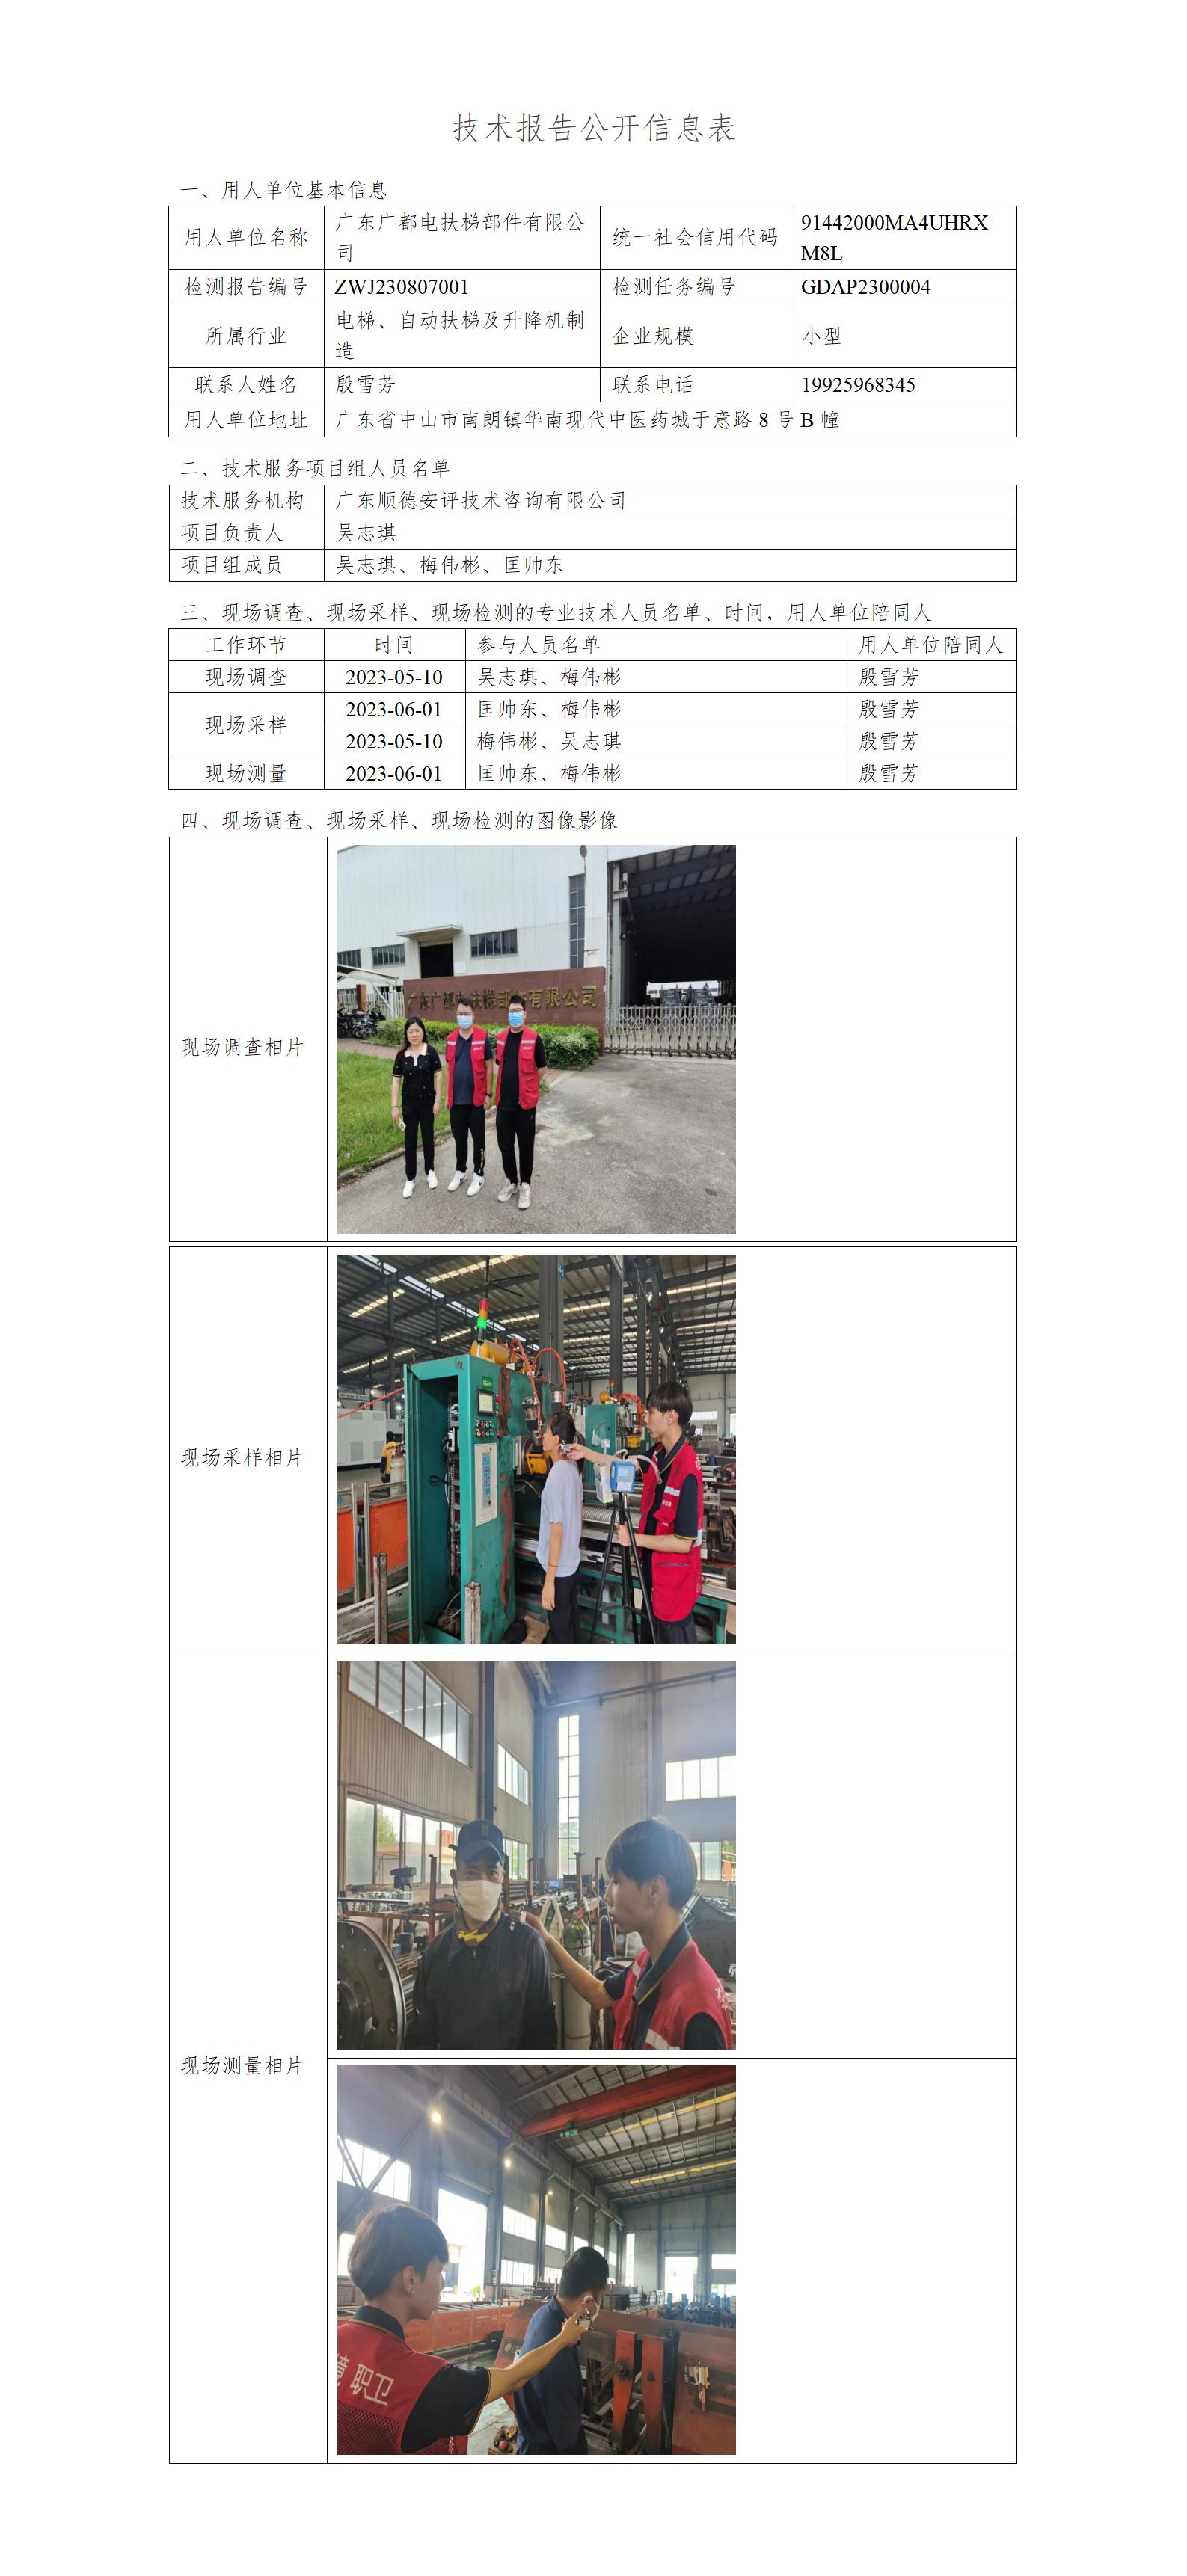 广东广都电扶梯部件有限公司-2023-技术报告公开信息表_01.jpg